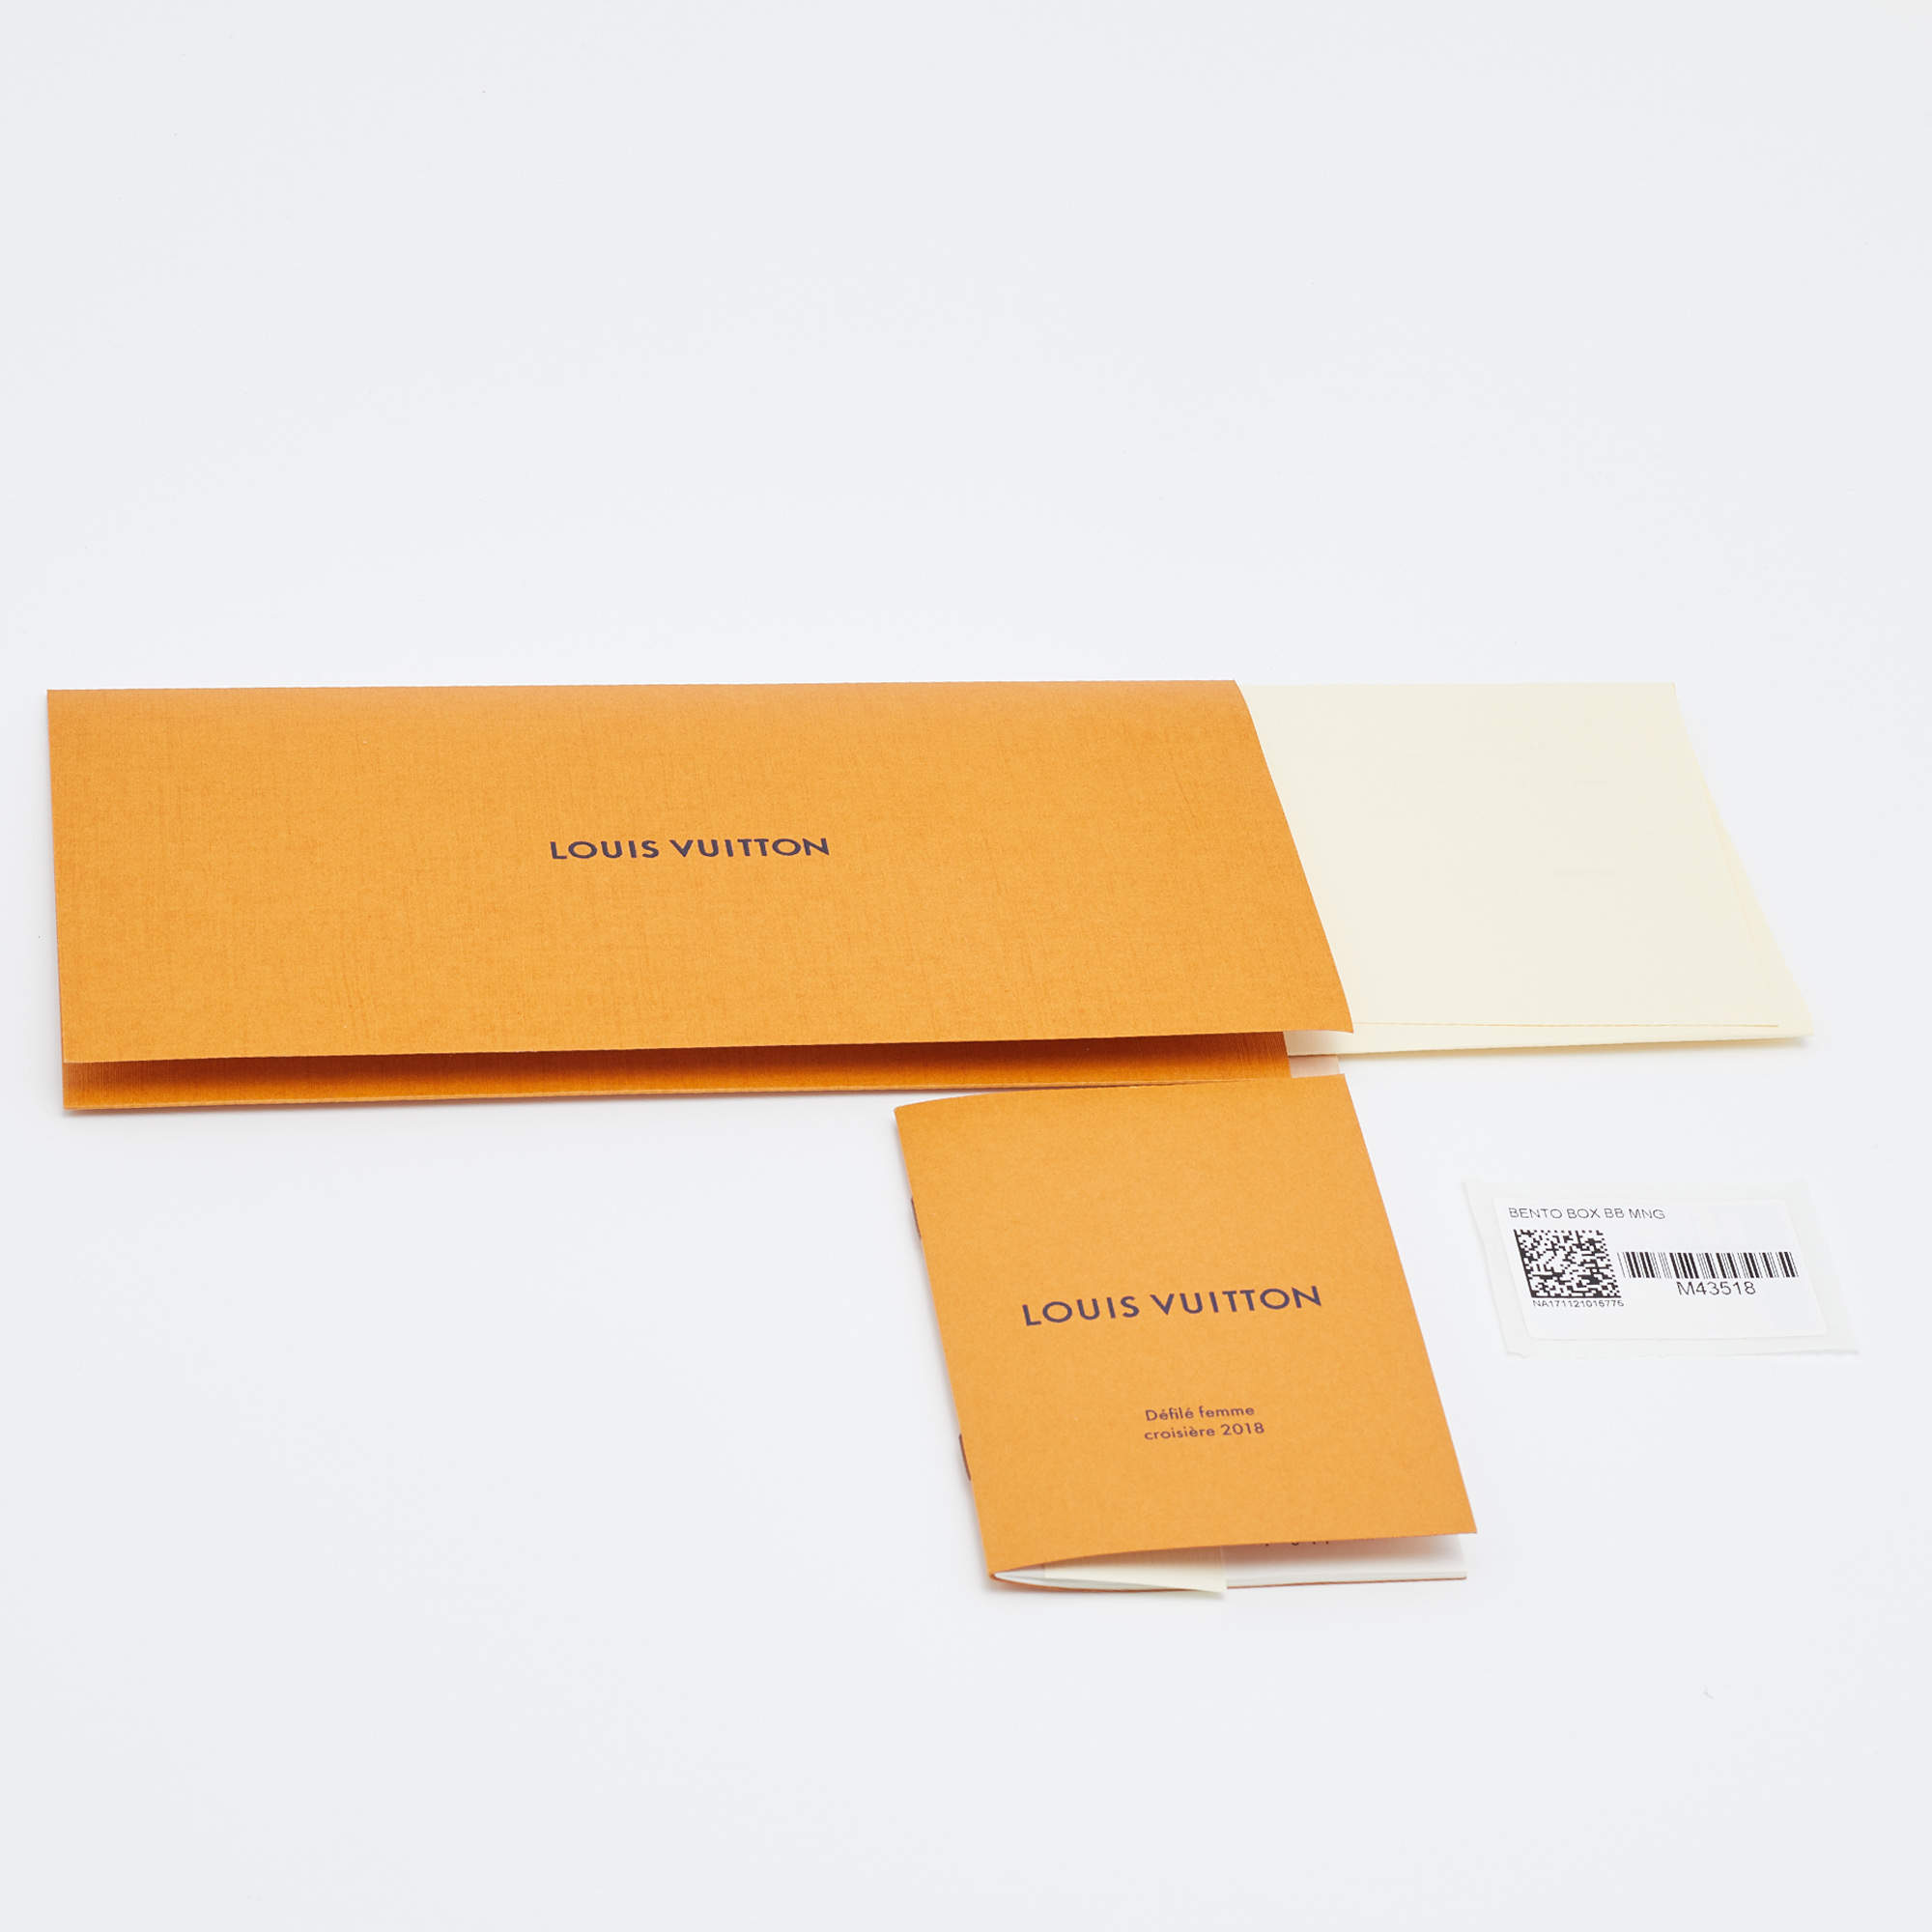 Louis Vuitton Bento Box Ew - For Sale on 1stDibs